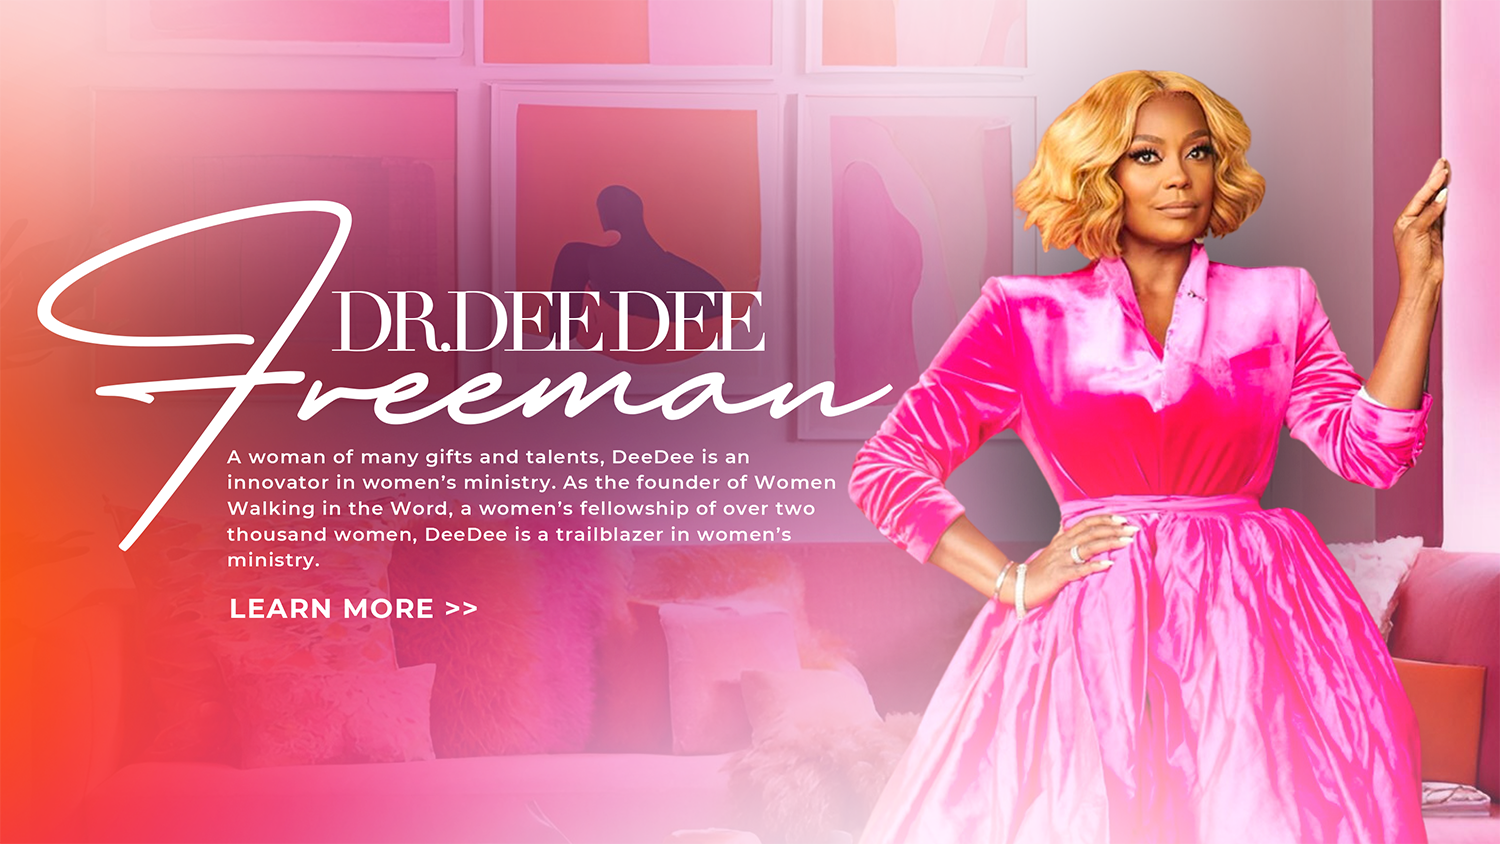 DeeDee Freeman Welcomes You